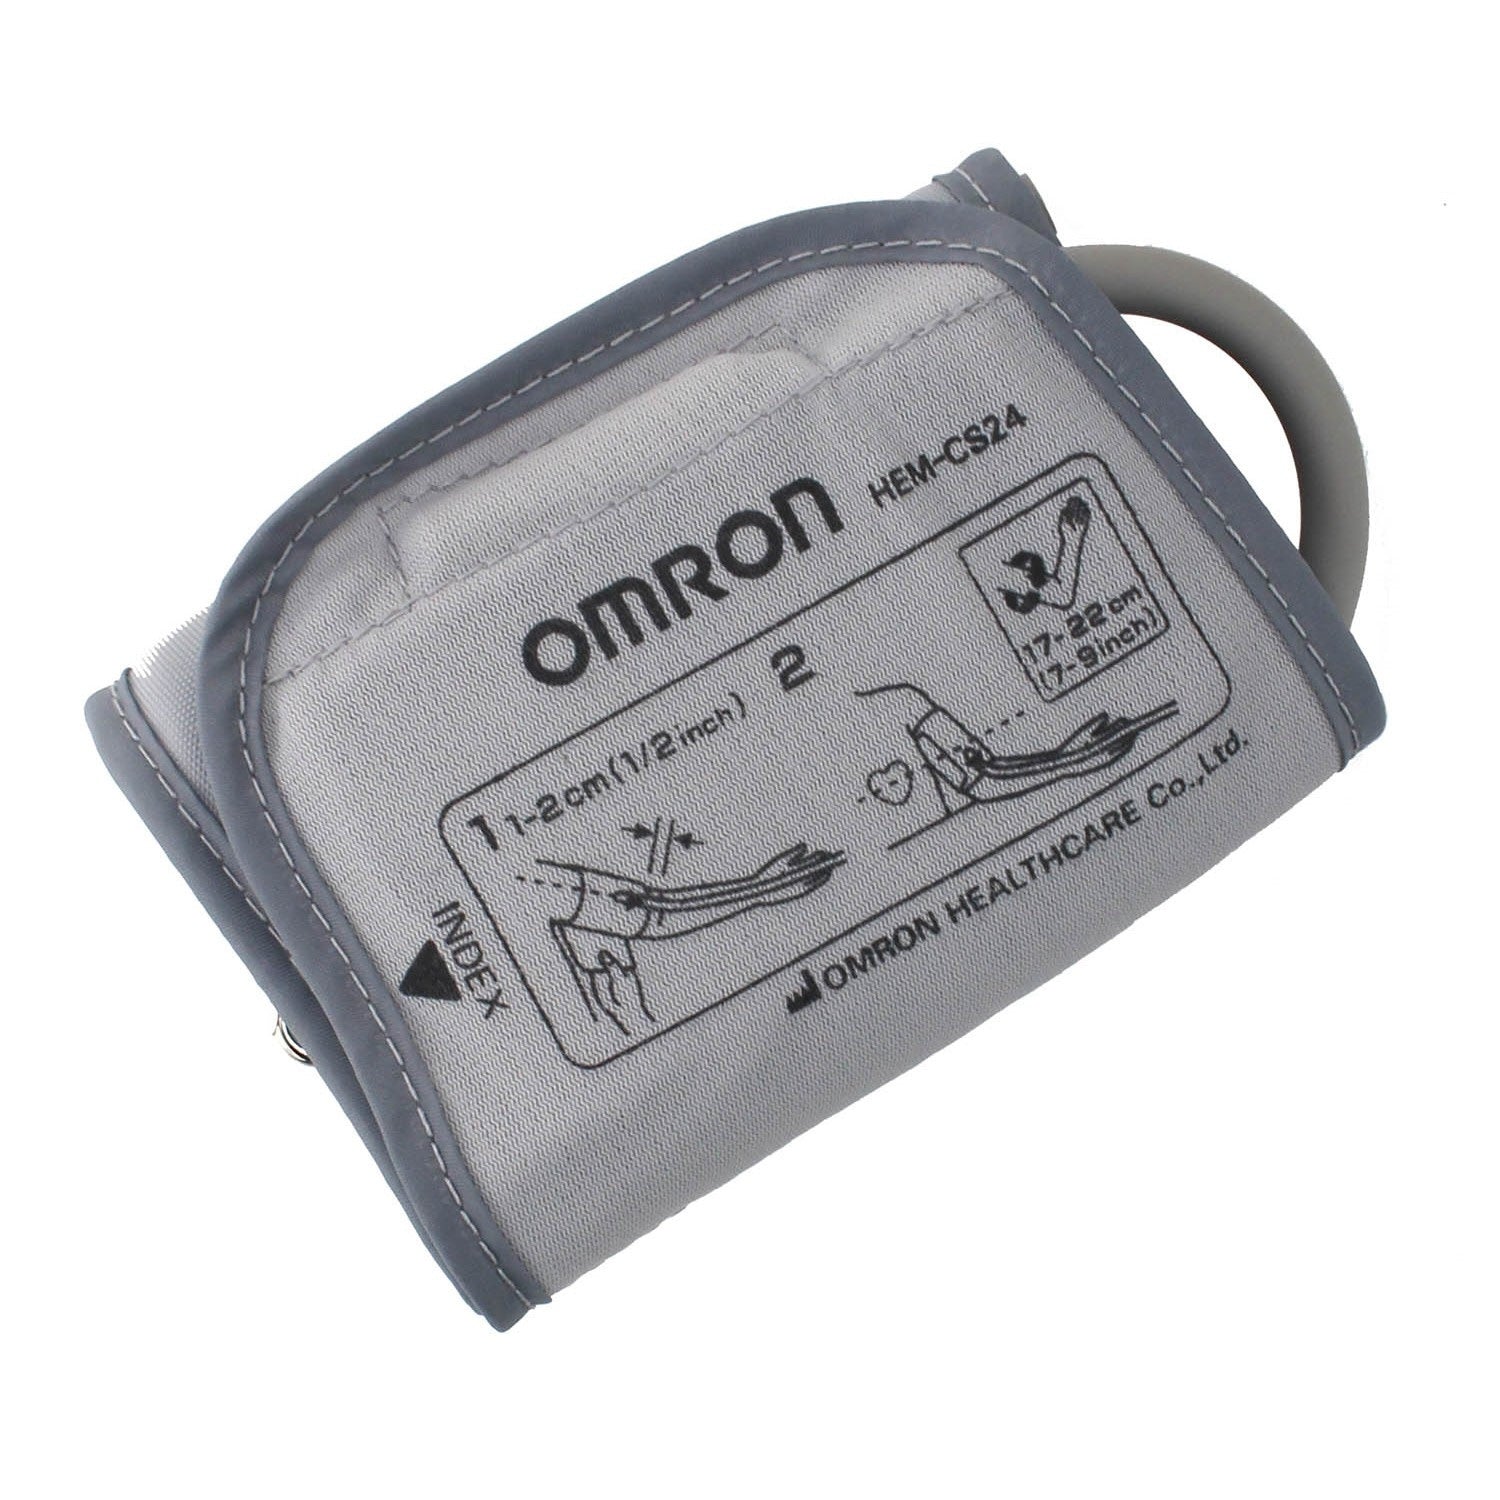 Omron Small Cuff